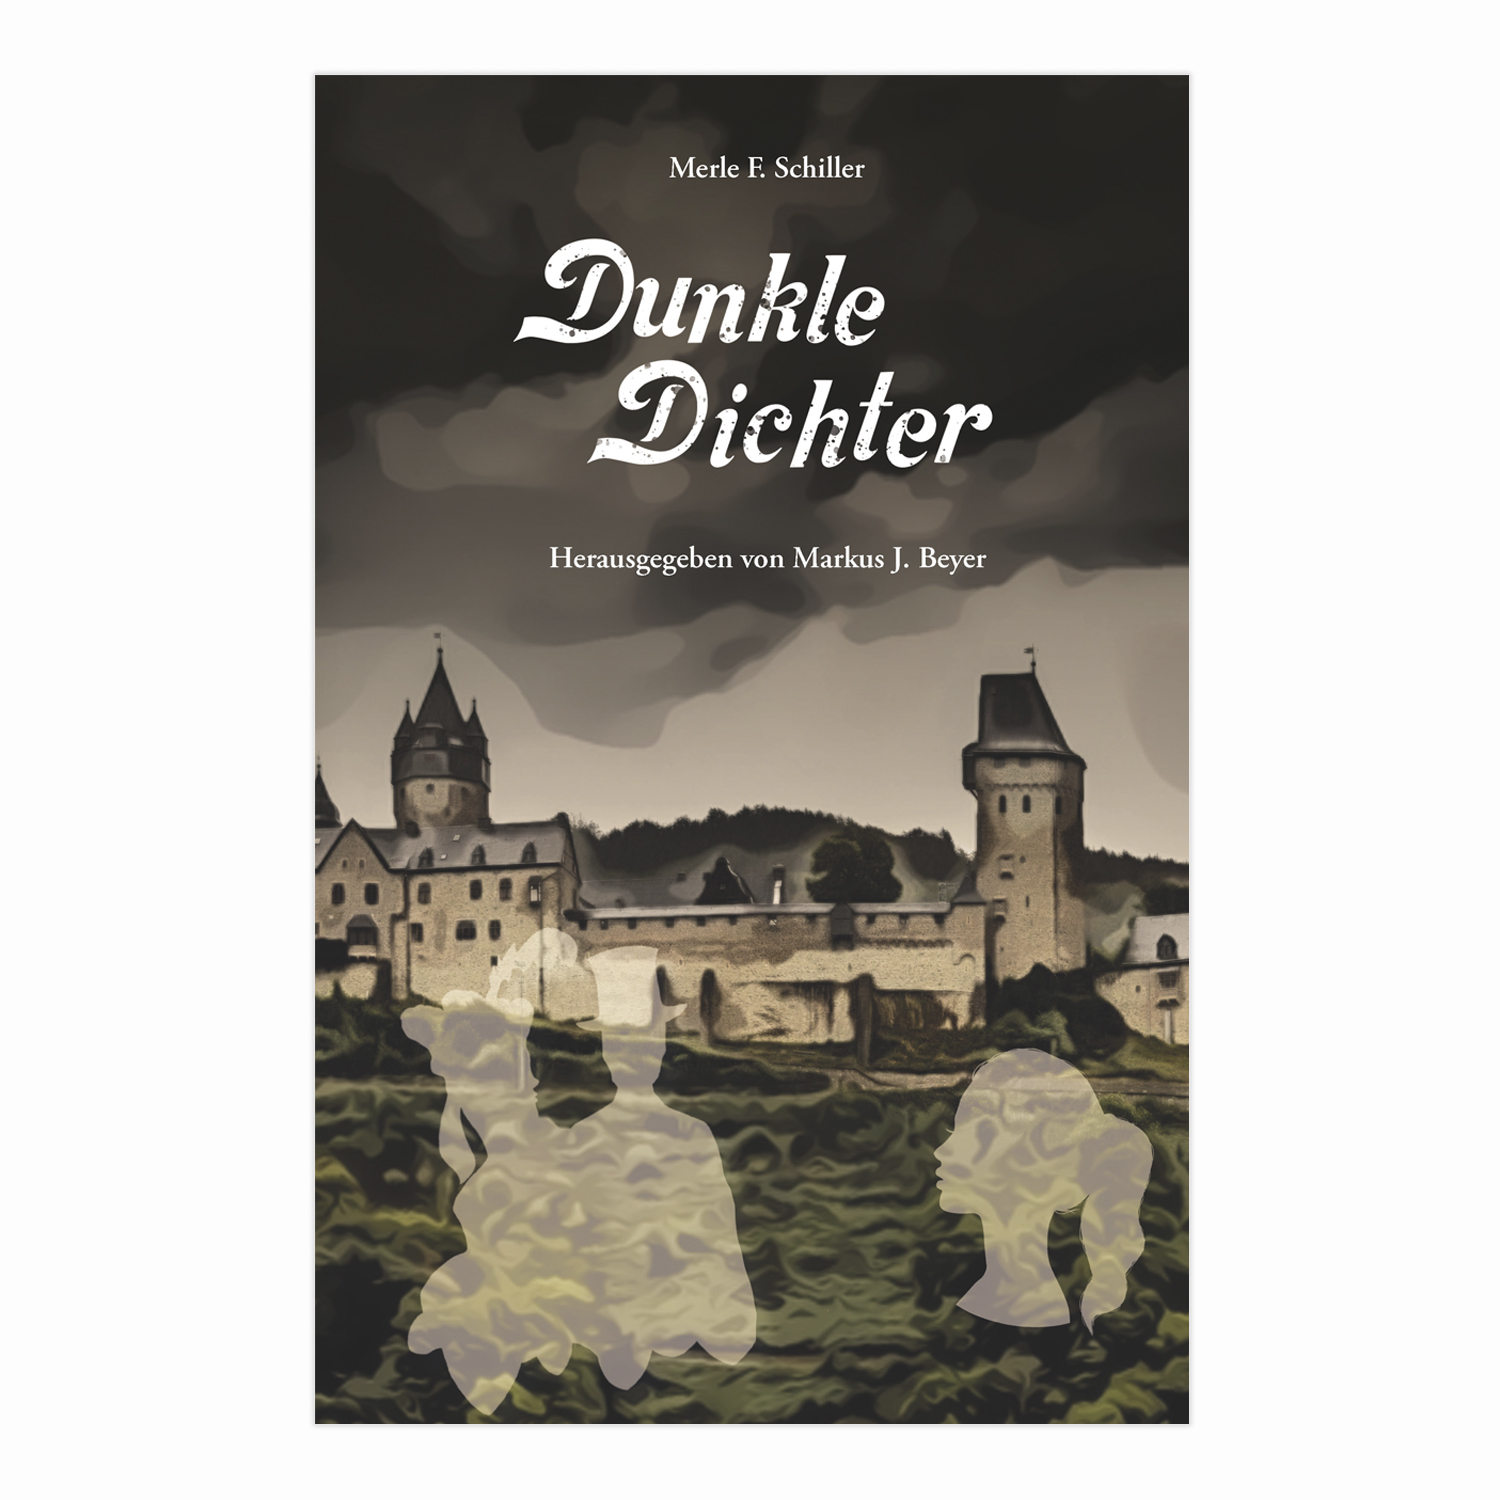 Dunkle Dichter (Merle F. Schiller und Markus J. Beyer)